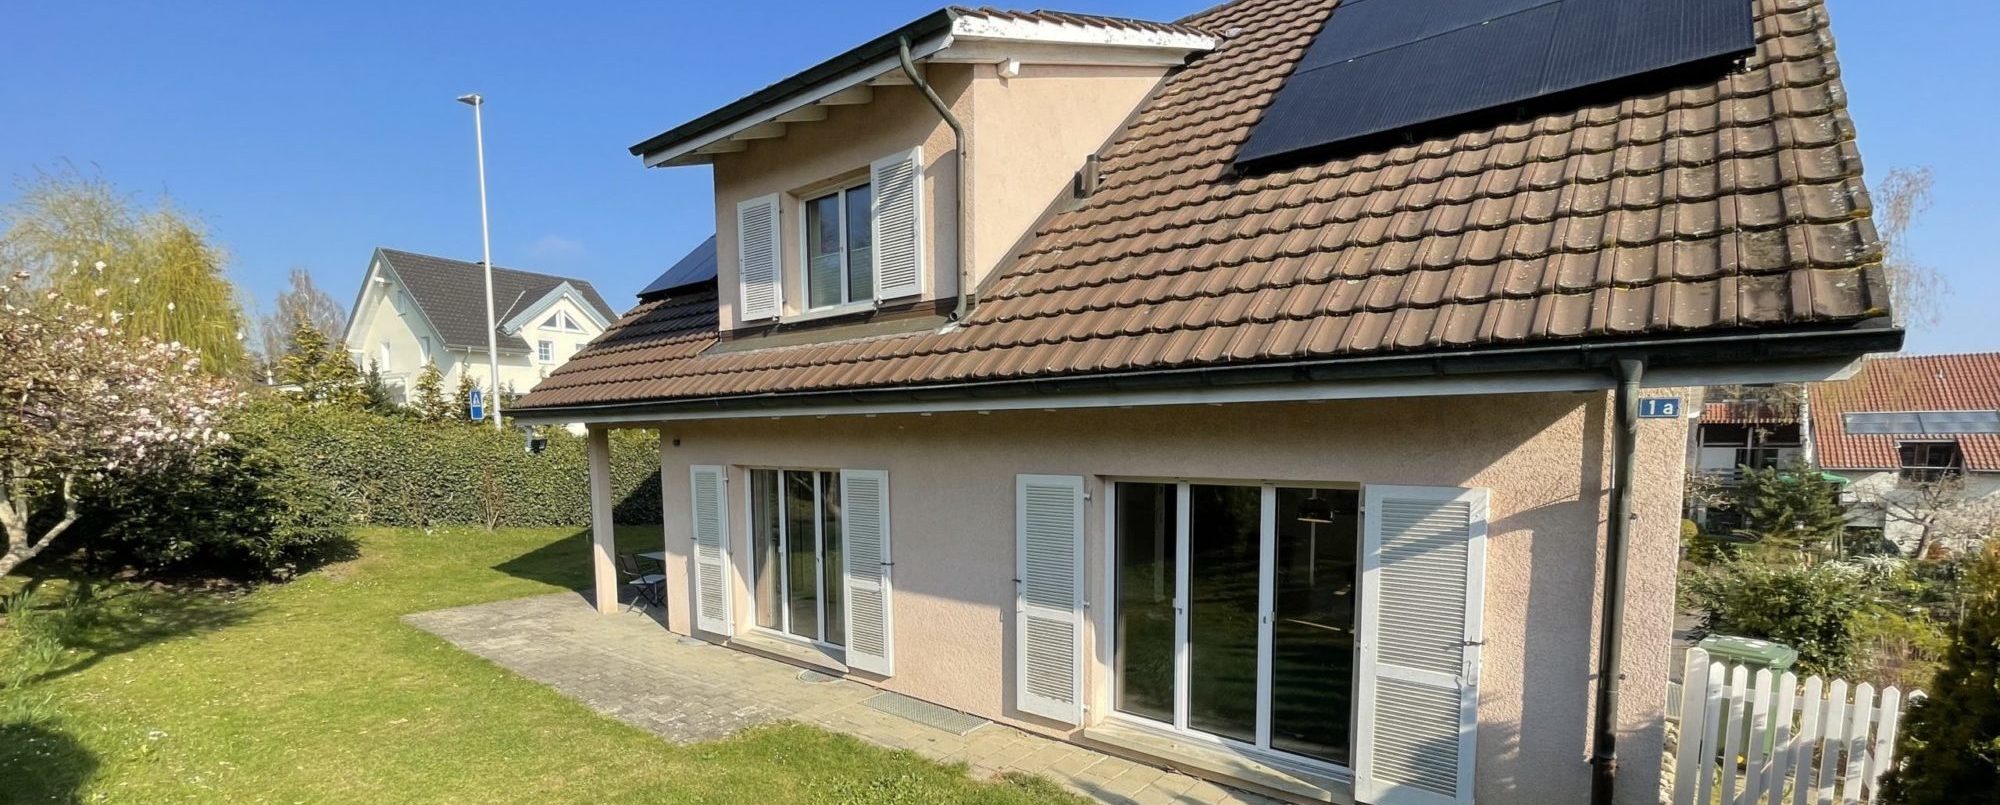 Hochwertig renoviertes 6 Zimmer Einfamilienhaus in bester Lage Kreuzlingens